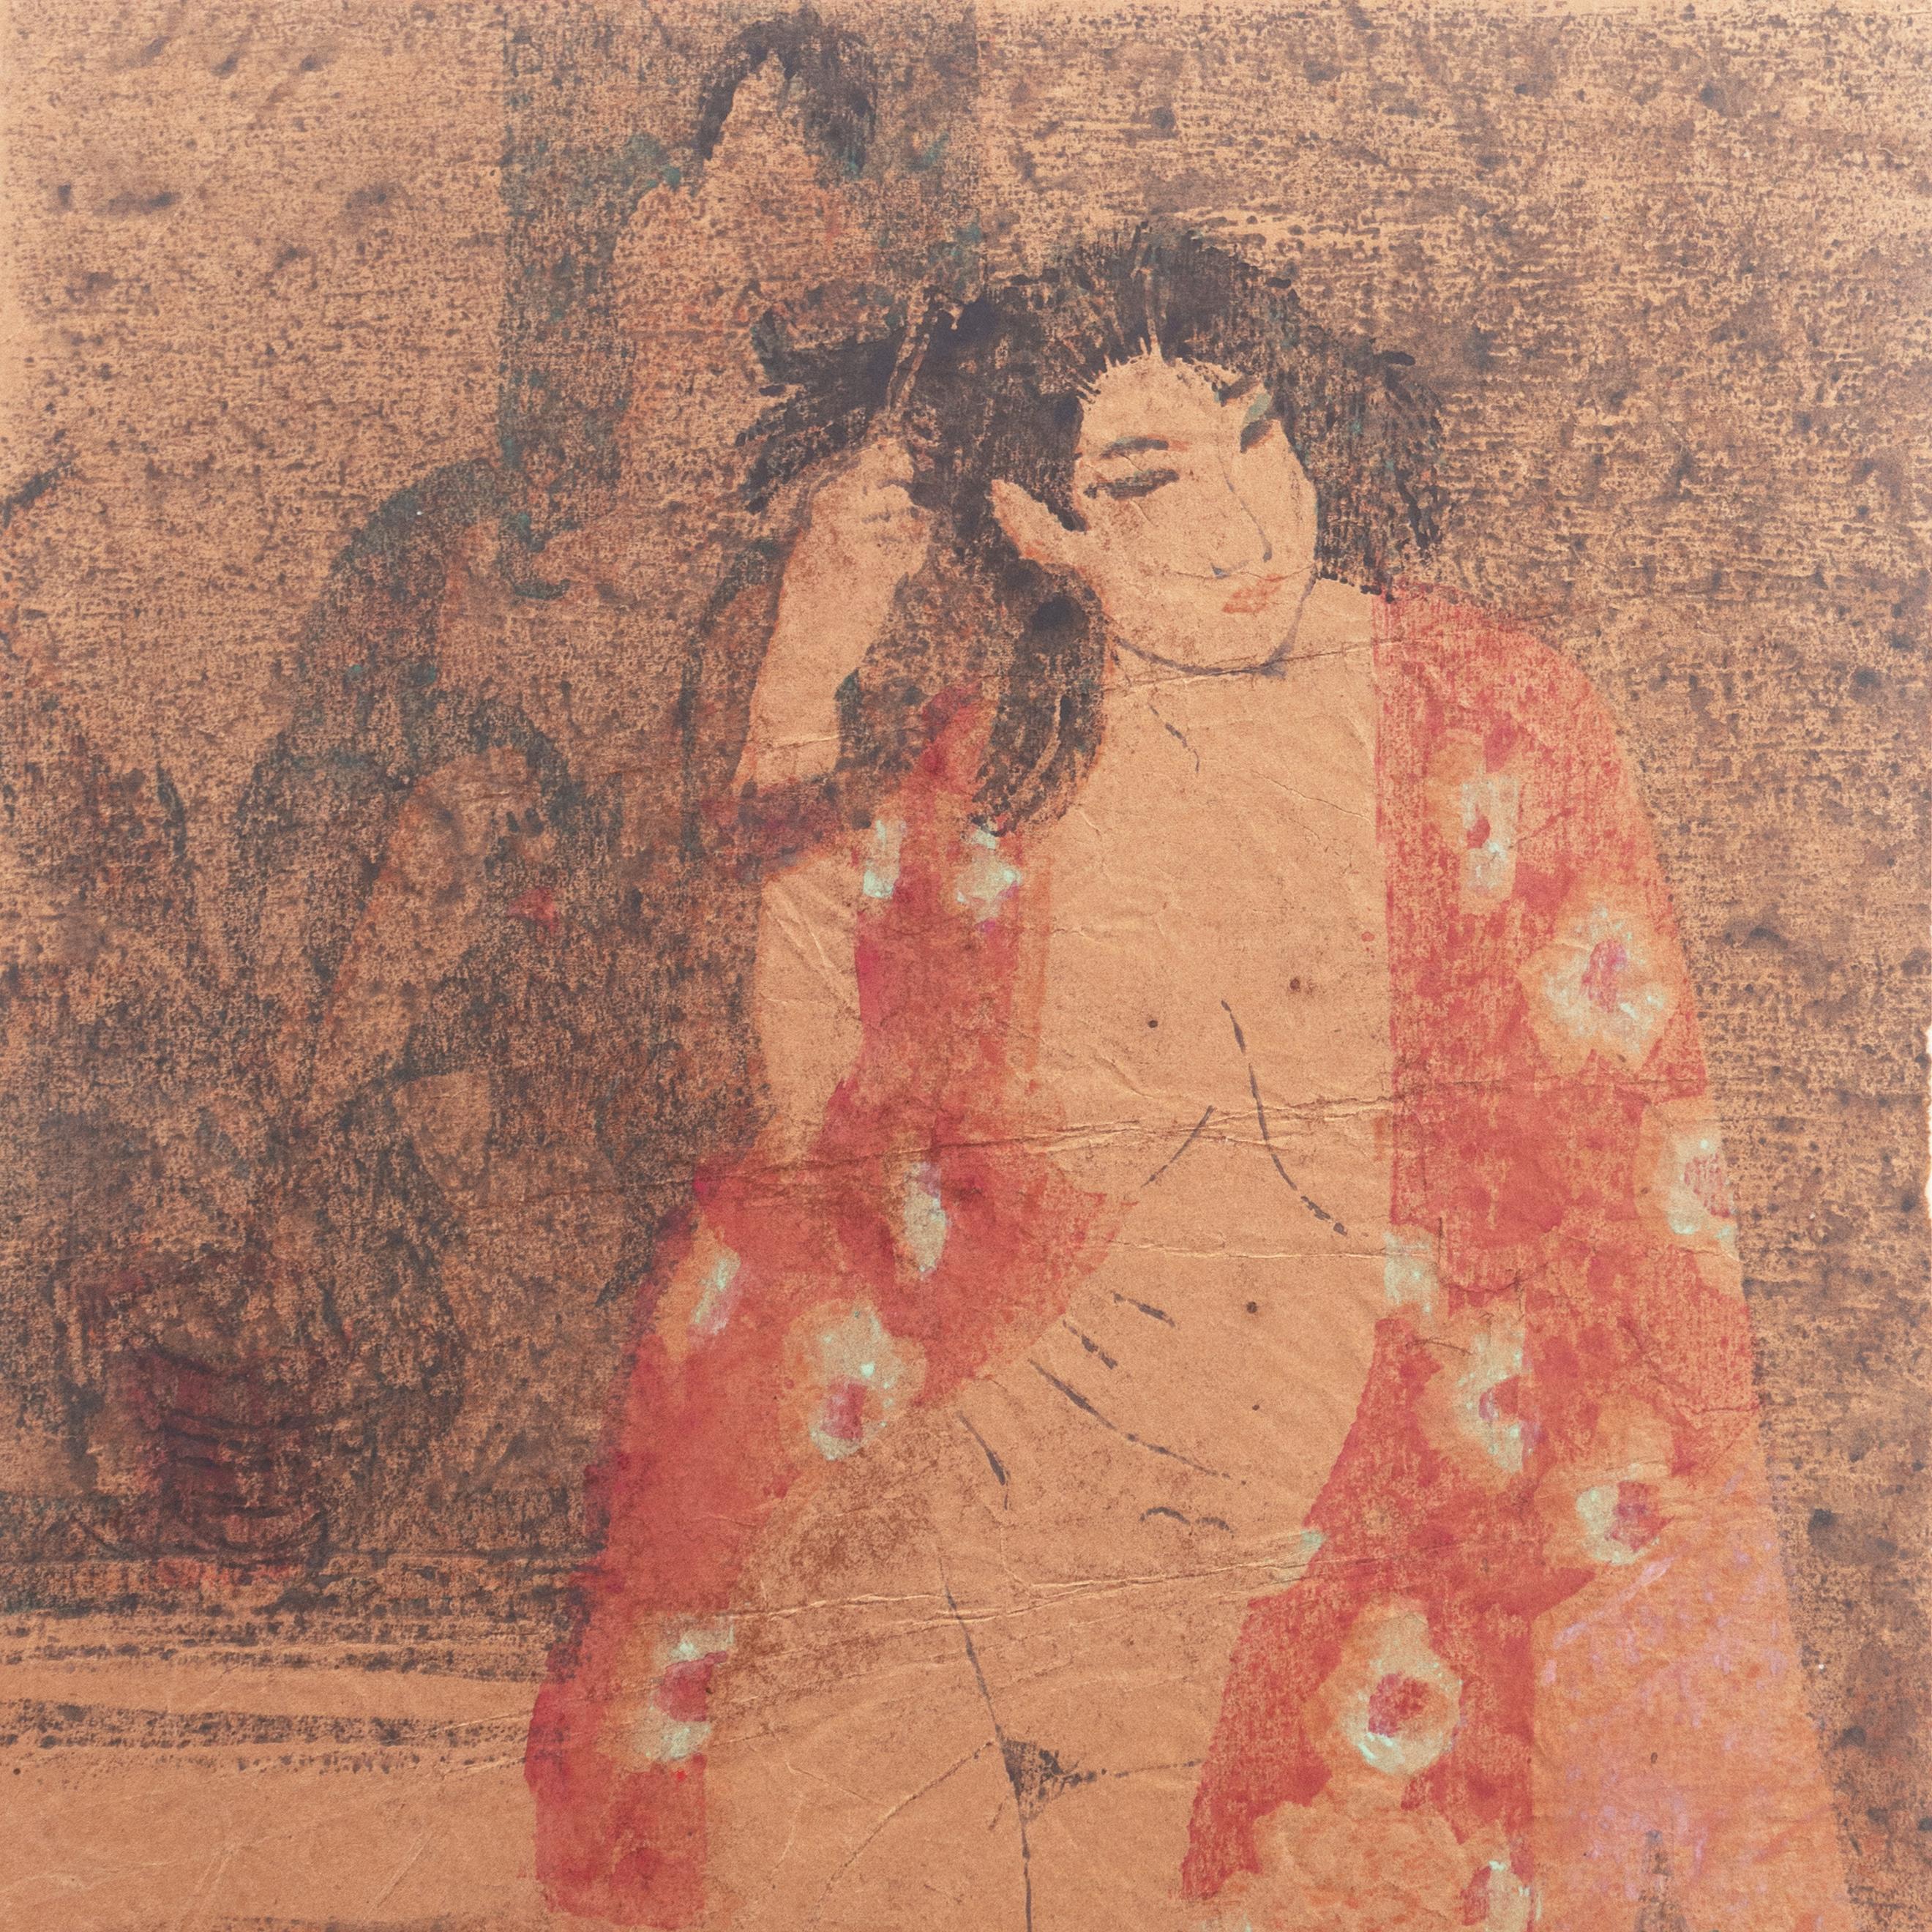 'Woman in Kimono', Louvre, Academie Chaumiere, Paris, California, SFAA, LACMA 1